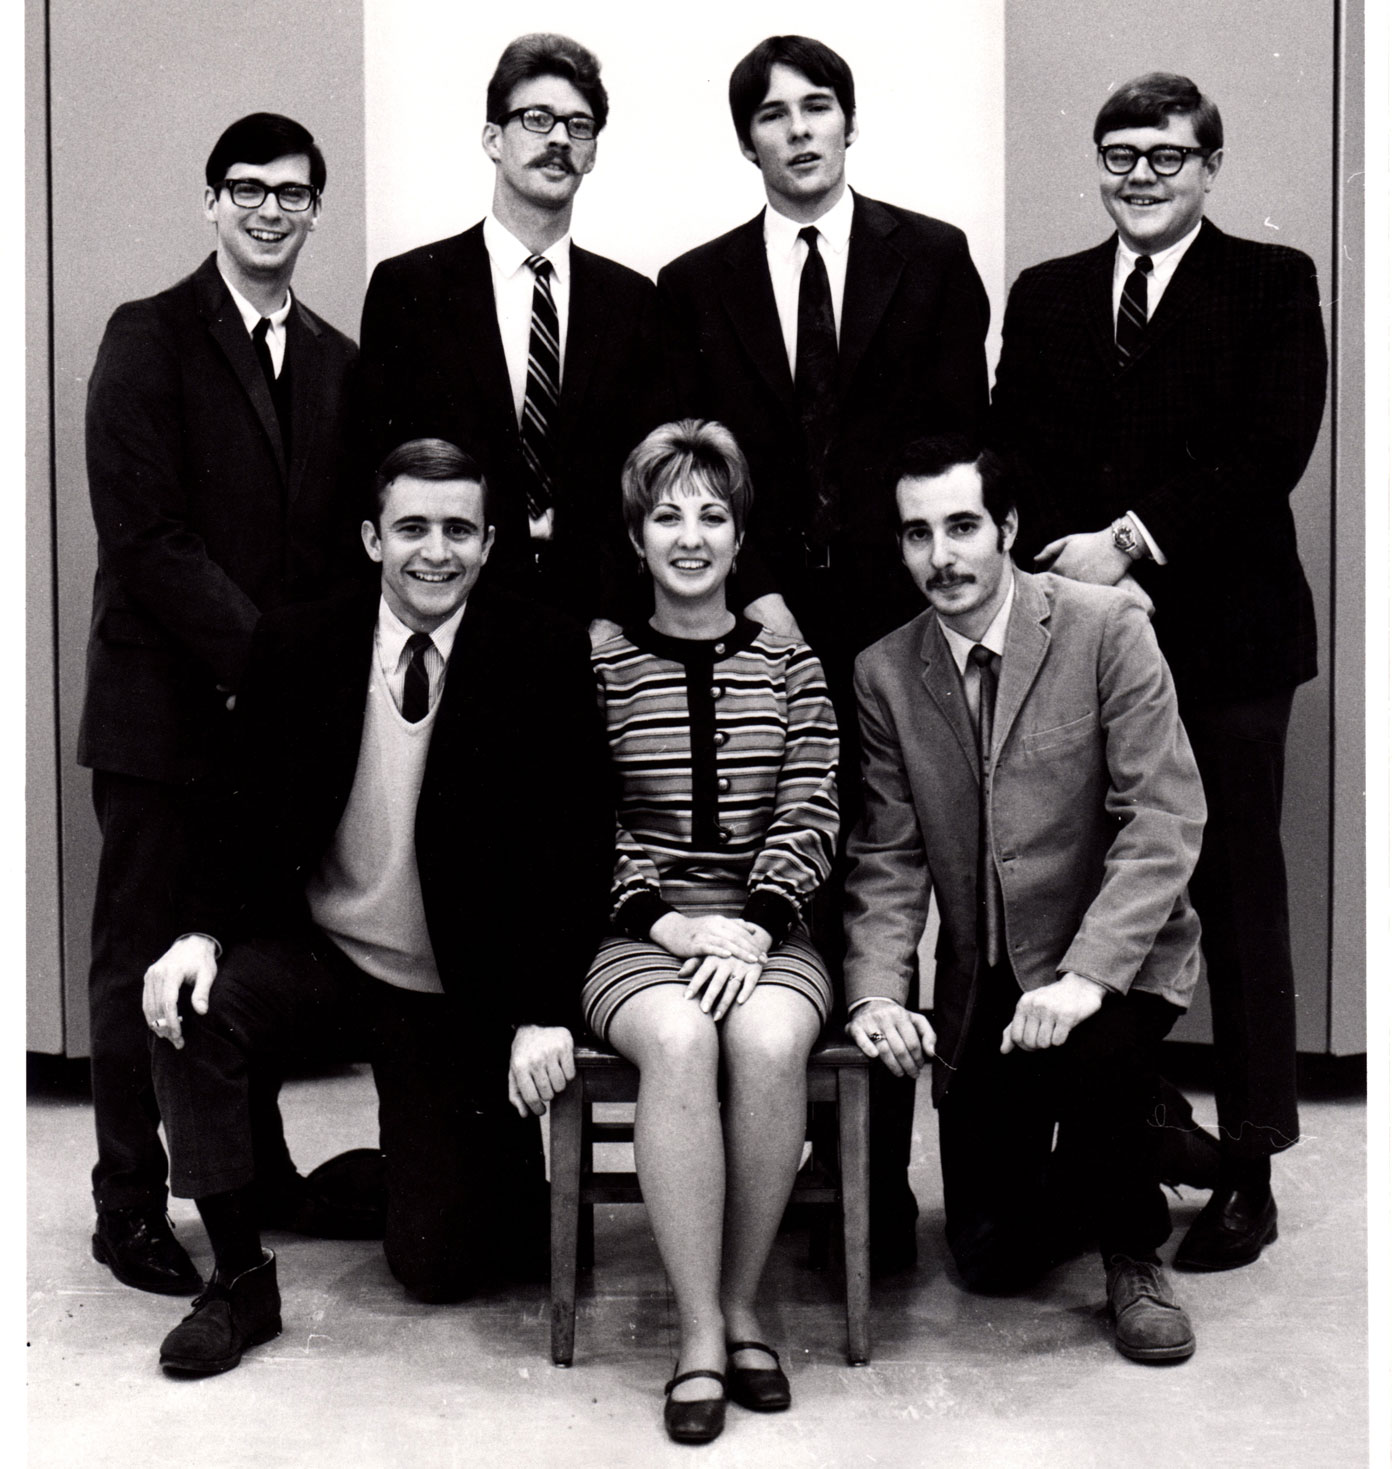 WFIU staff in 1967